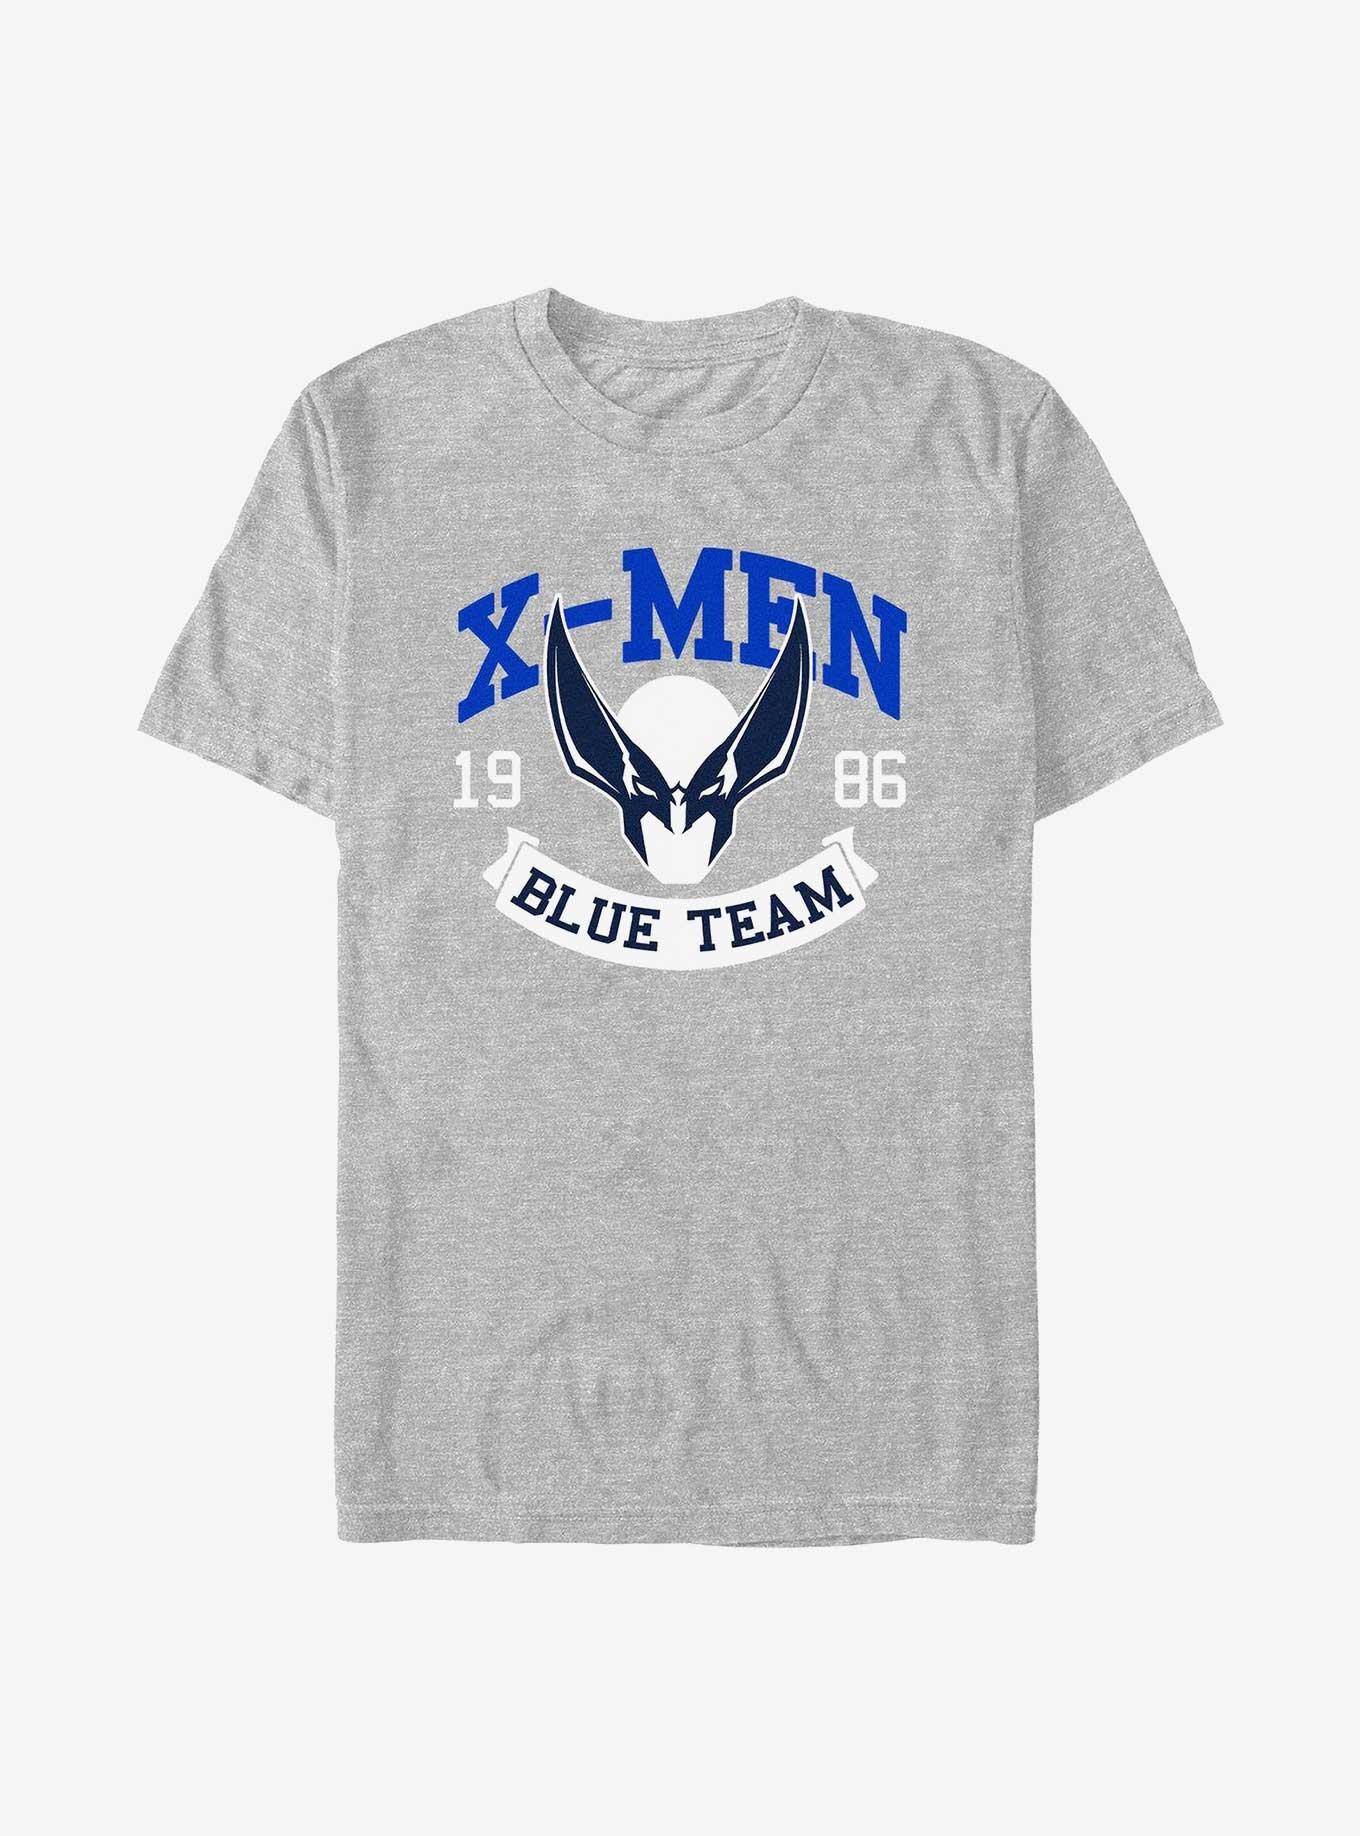 X-Men Wolverine Blue Team T-Shirt